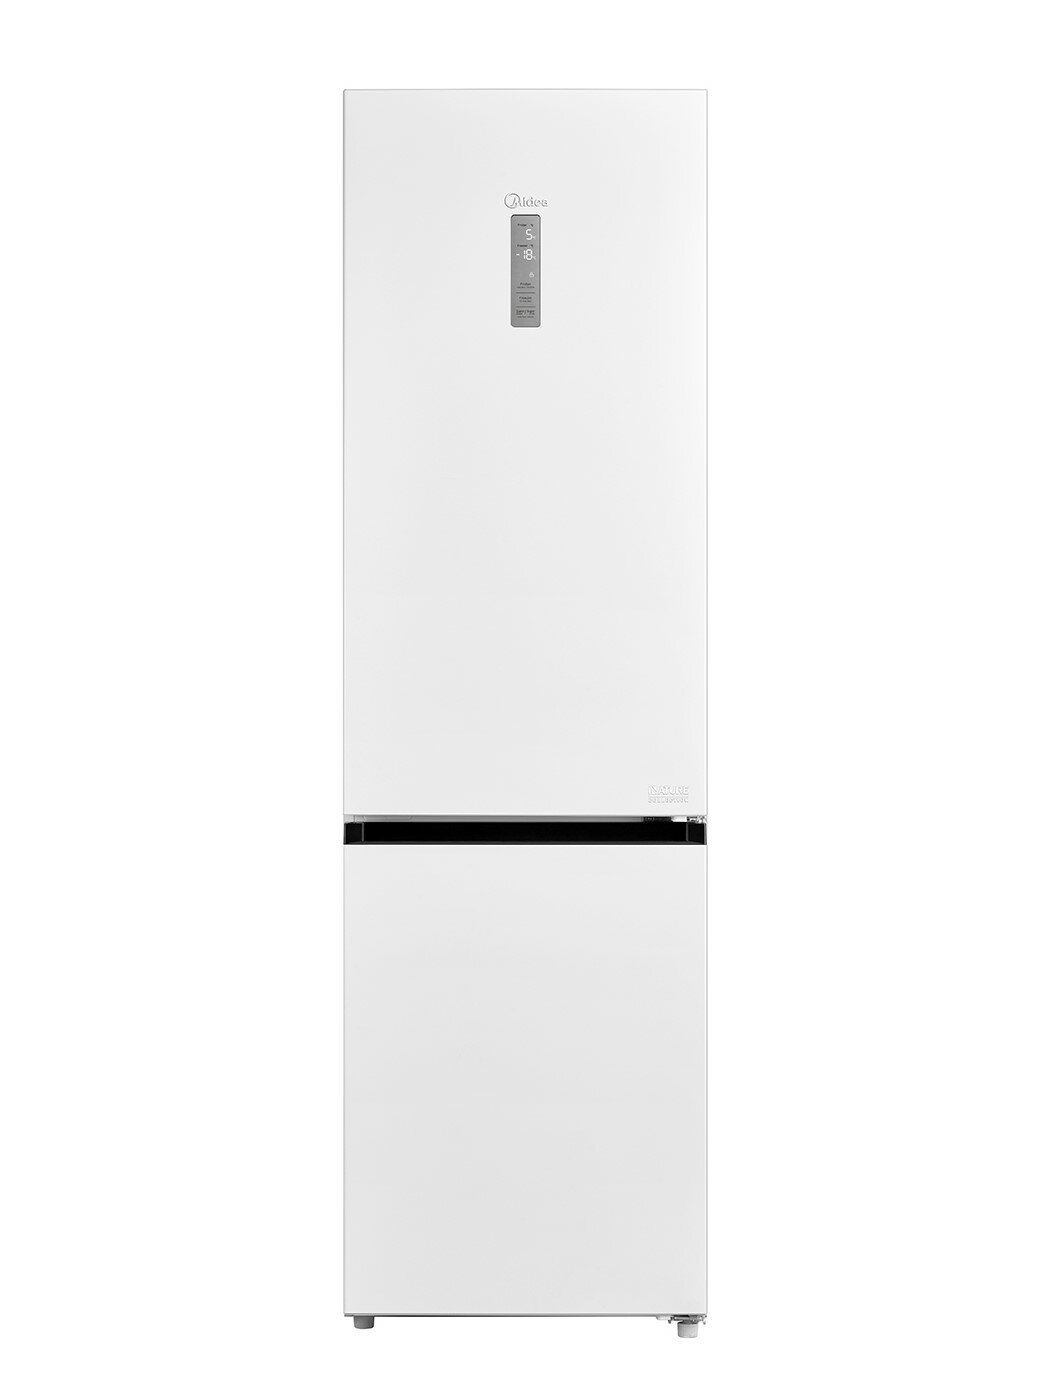 Двухкамерный холодильник Midea MDRB521MIE01OD